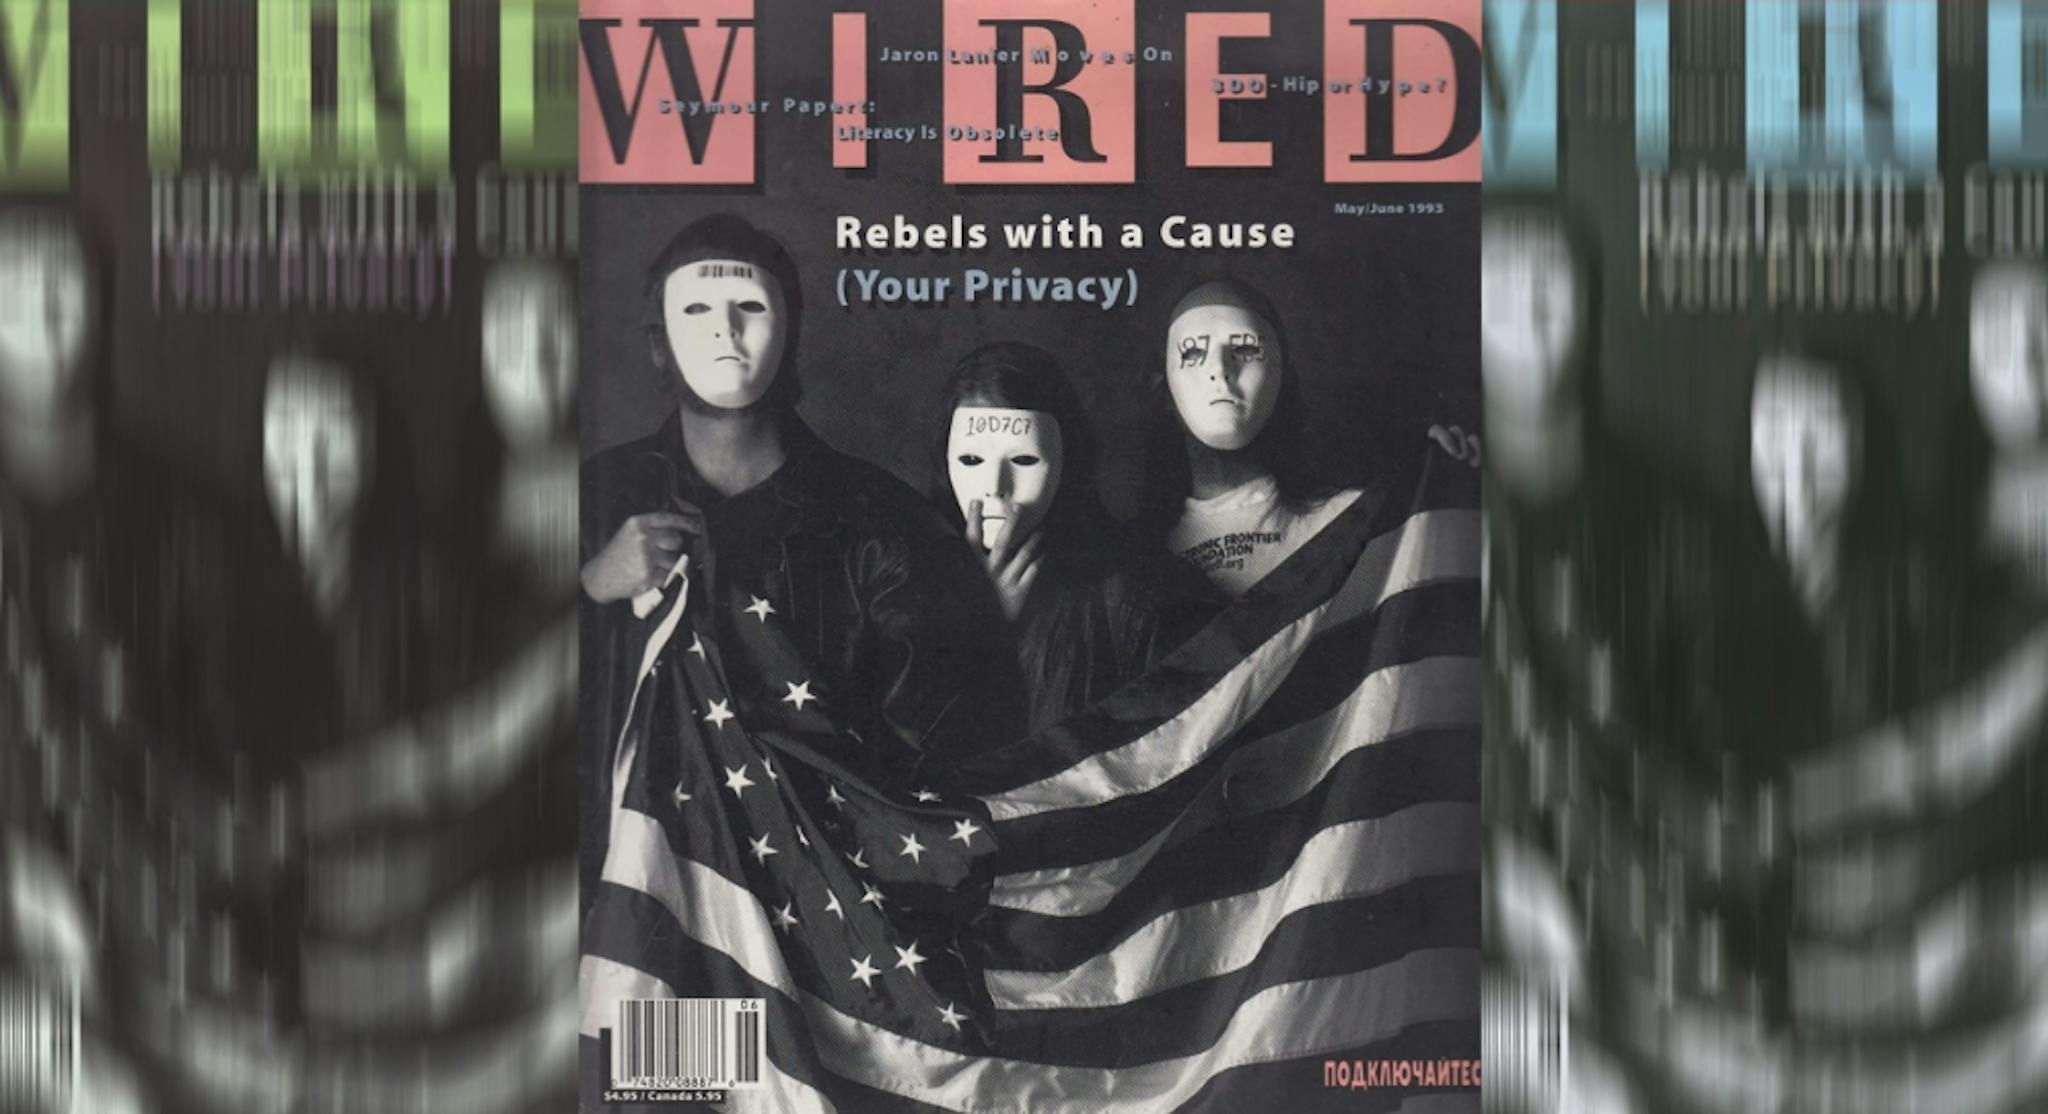 休斯、吉尔摩和梅是 1993 年 2 月《连线》杂志封面上的蒙面人物。图片来源：CryptoArtCulture